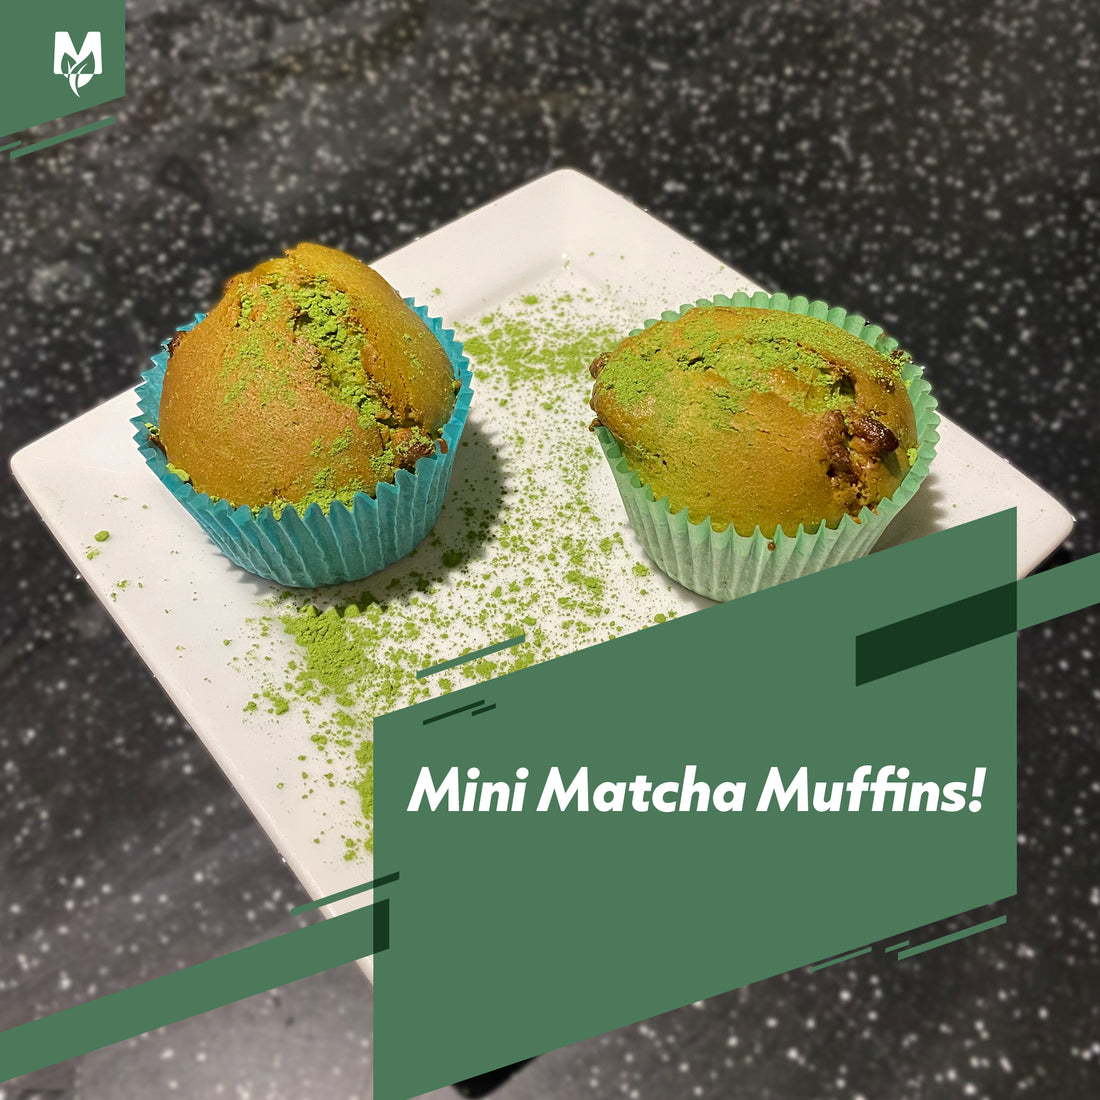 Matchaeco Mini Matcha Muffins